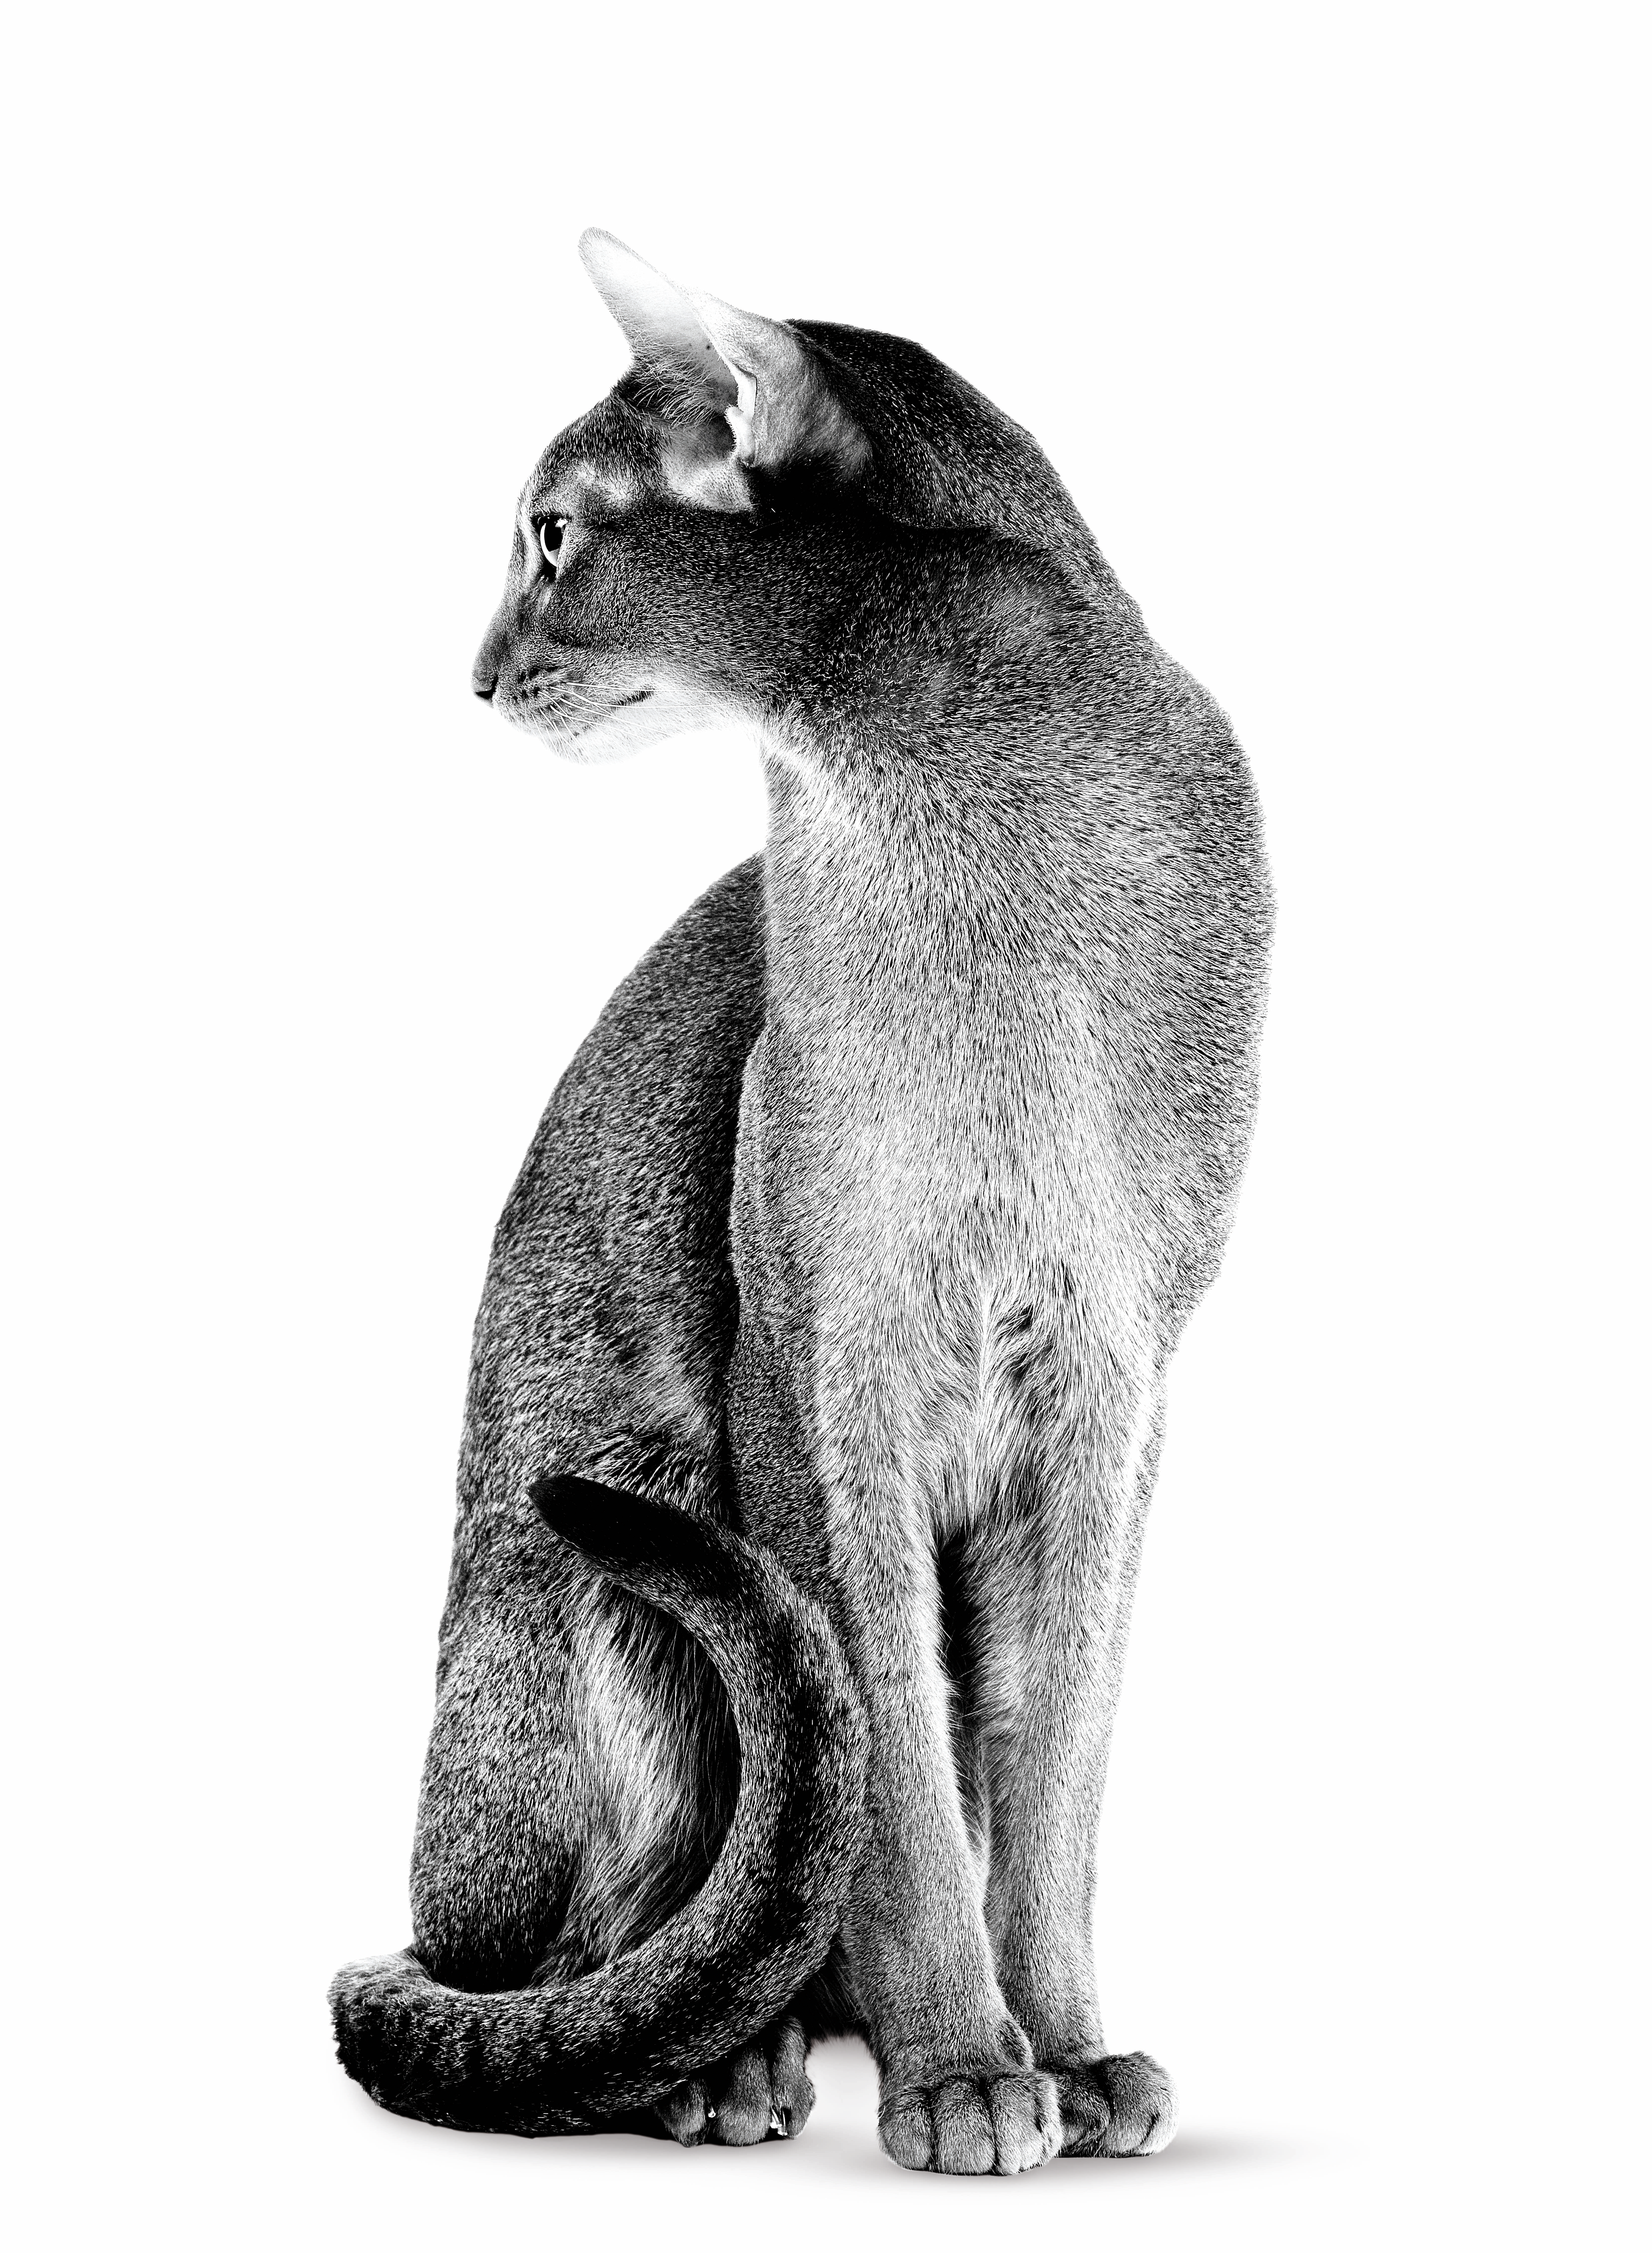 Abisinio adulto sentado en blanco y negro sobre fondo blanco.